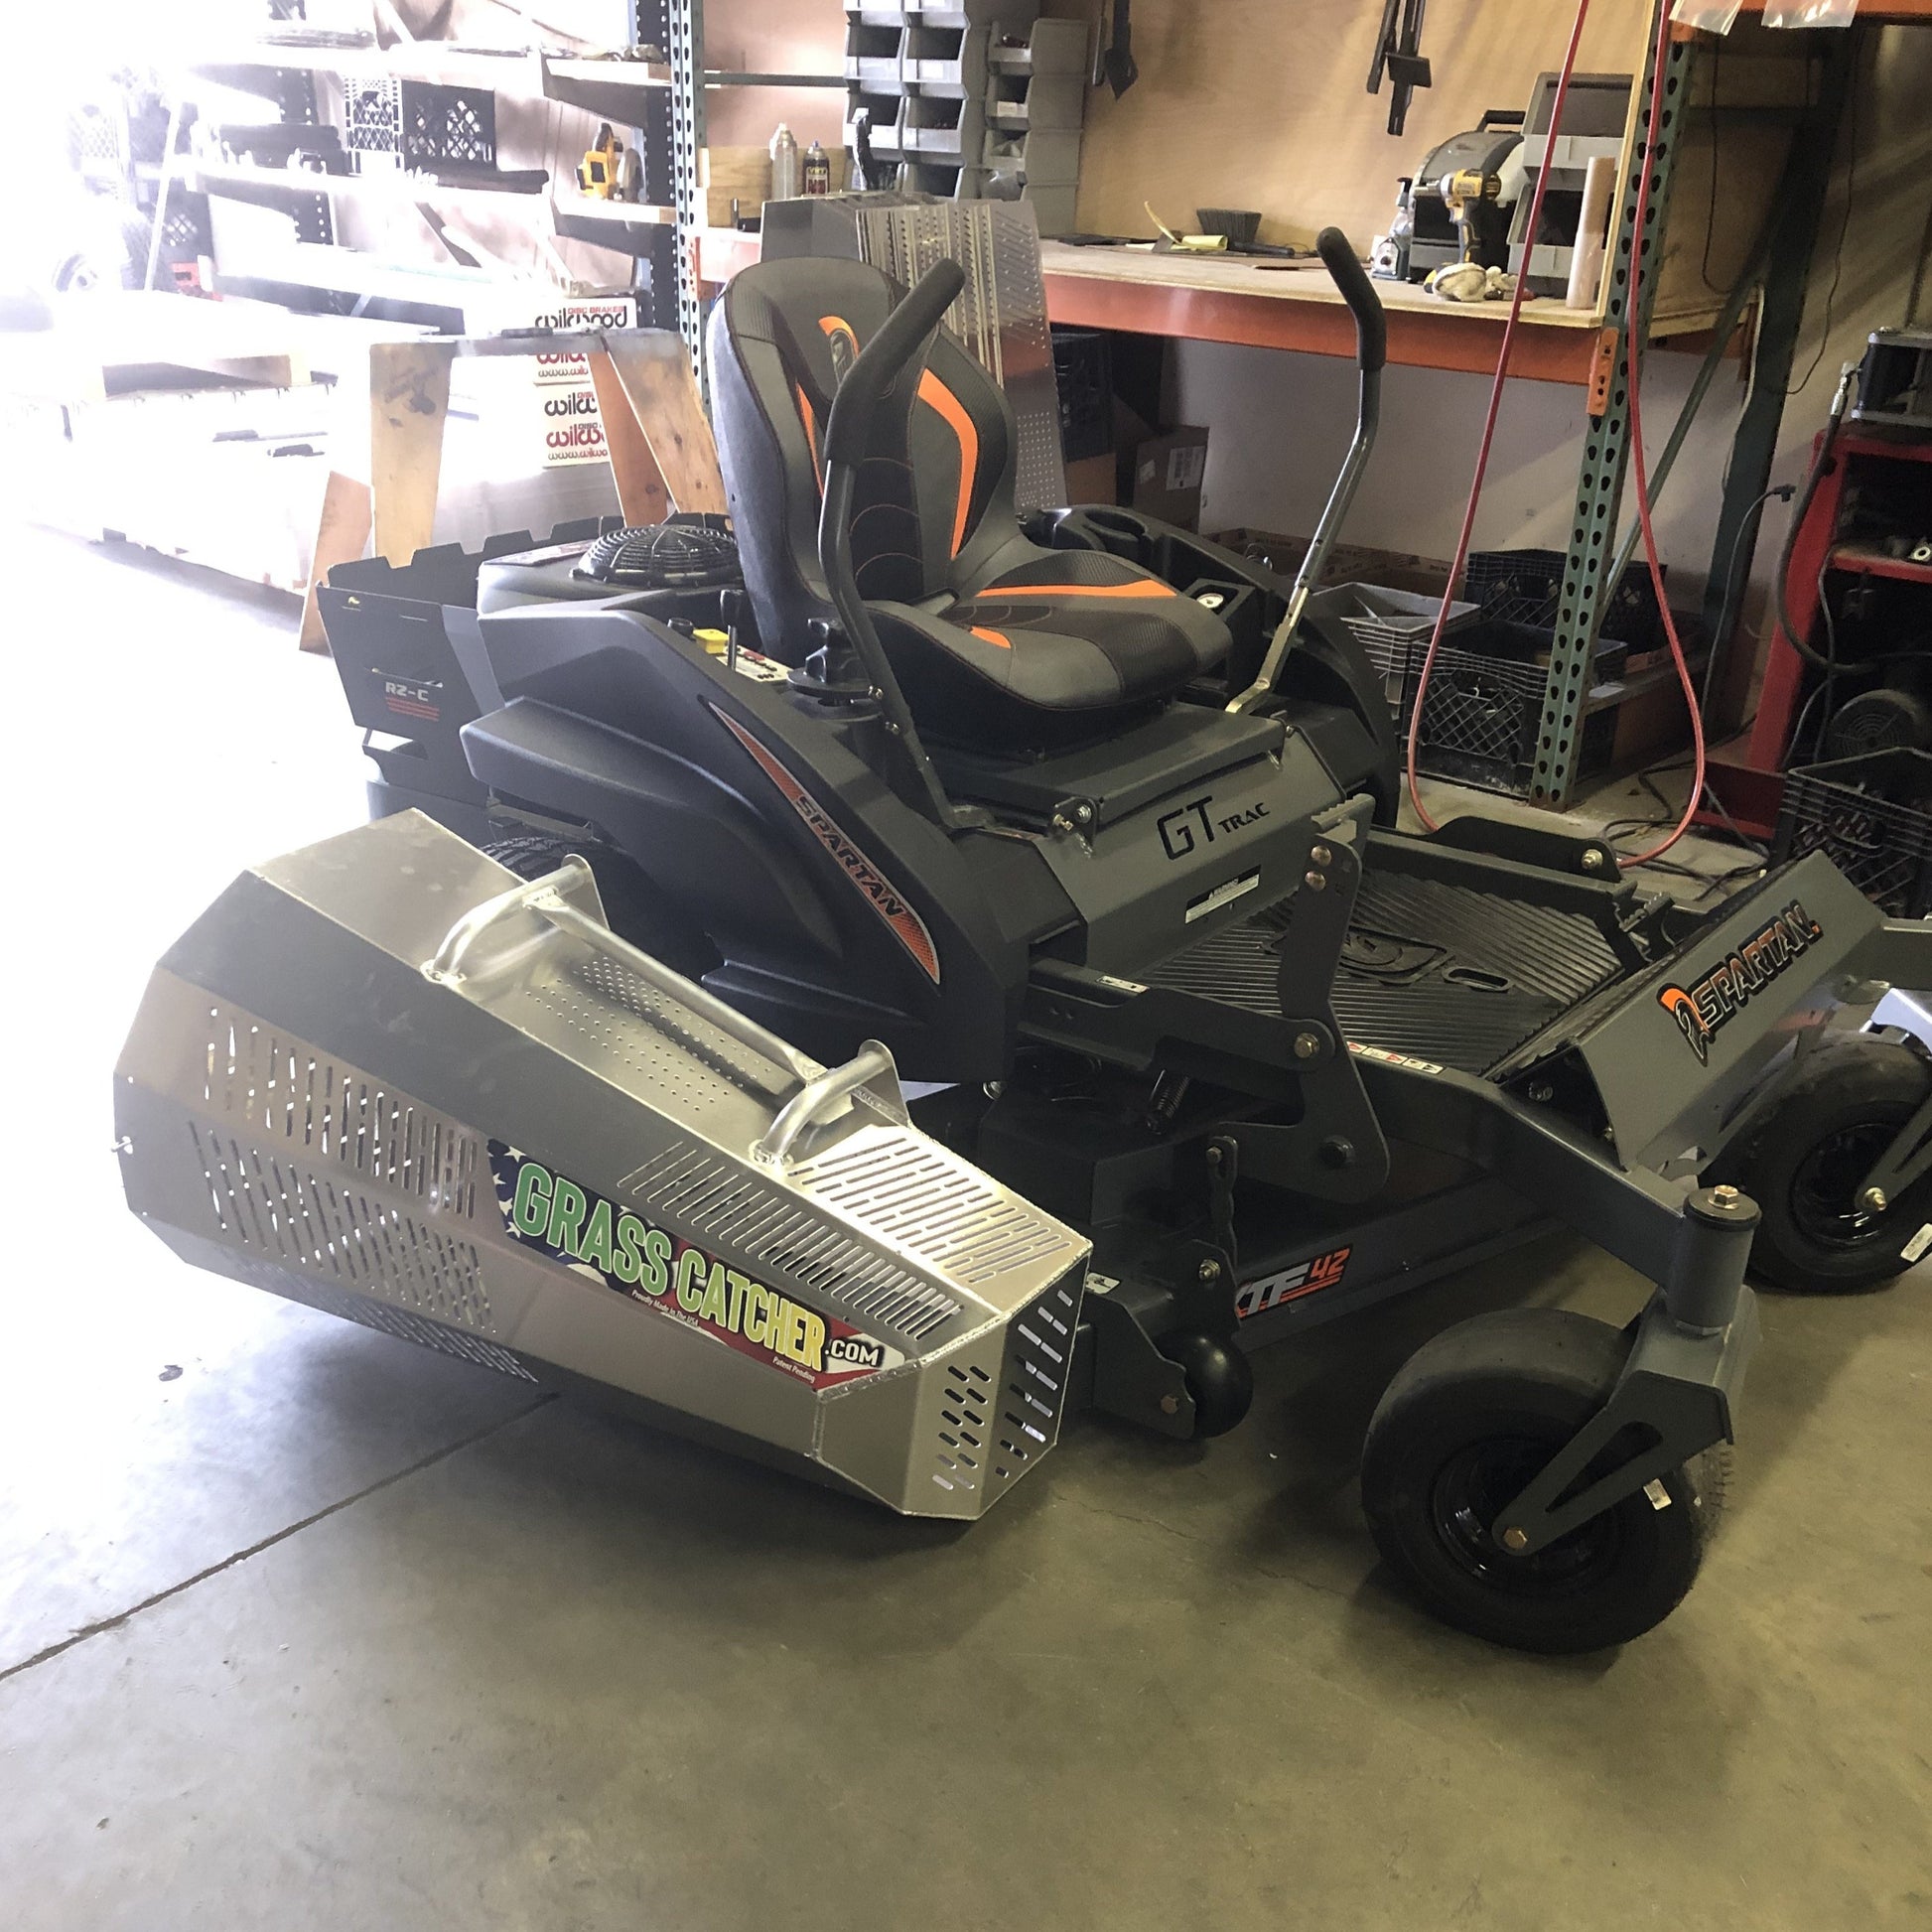 Spartan RZ-C zero turn mower with Aluminum Grass Catcher